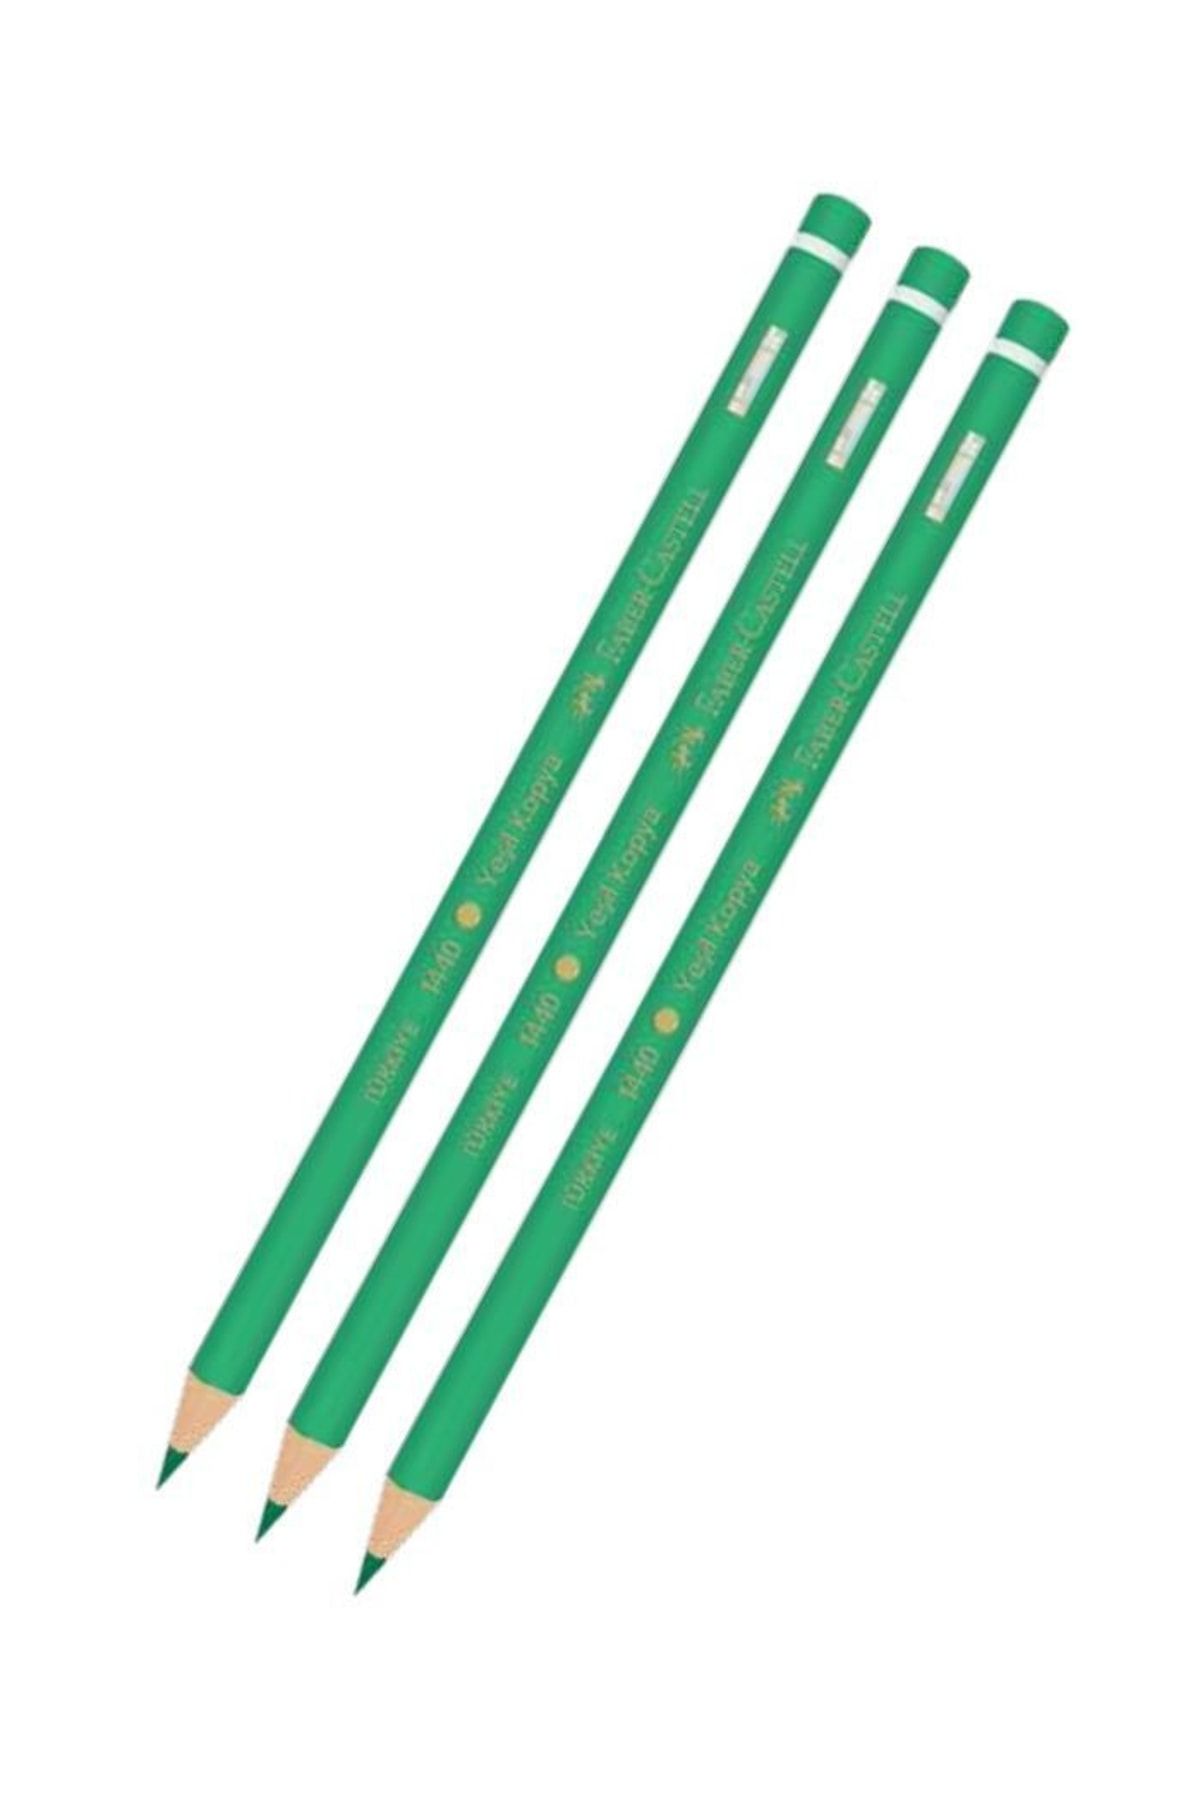 Faber Castell Yeşil Kalem Kopya 3 Adet Faber Yeşil Kurşun Kalem Başlık Kalemi 3 Adet